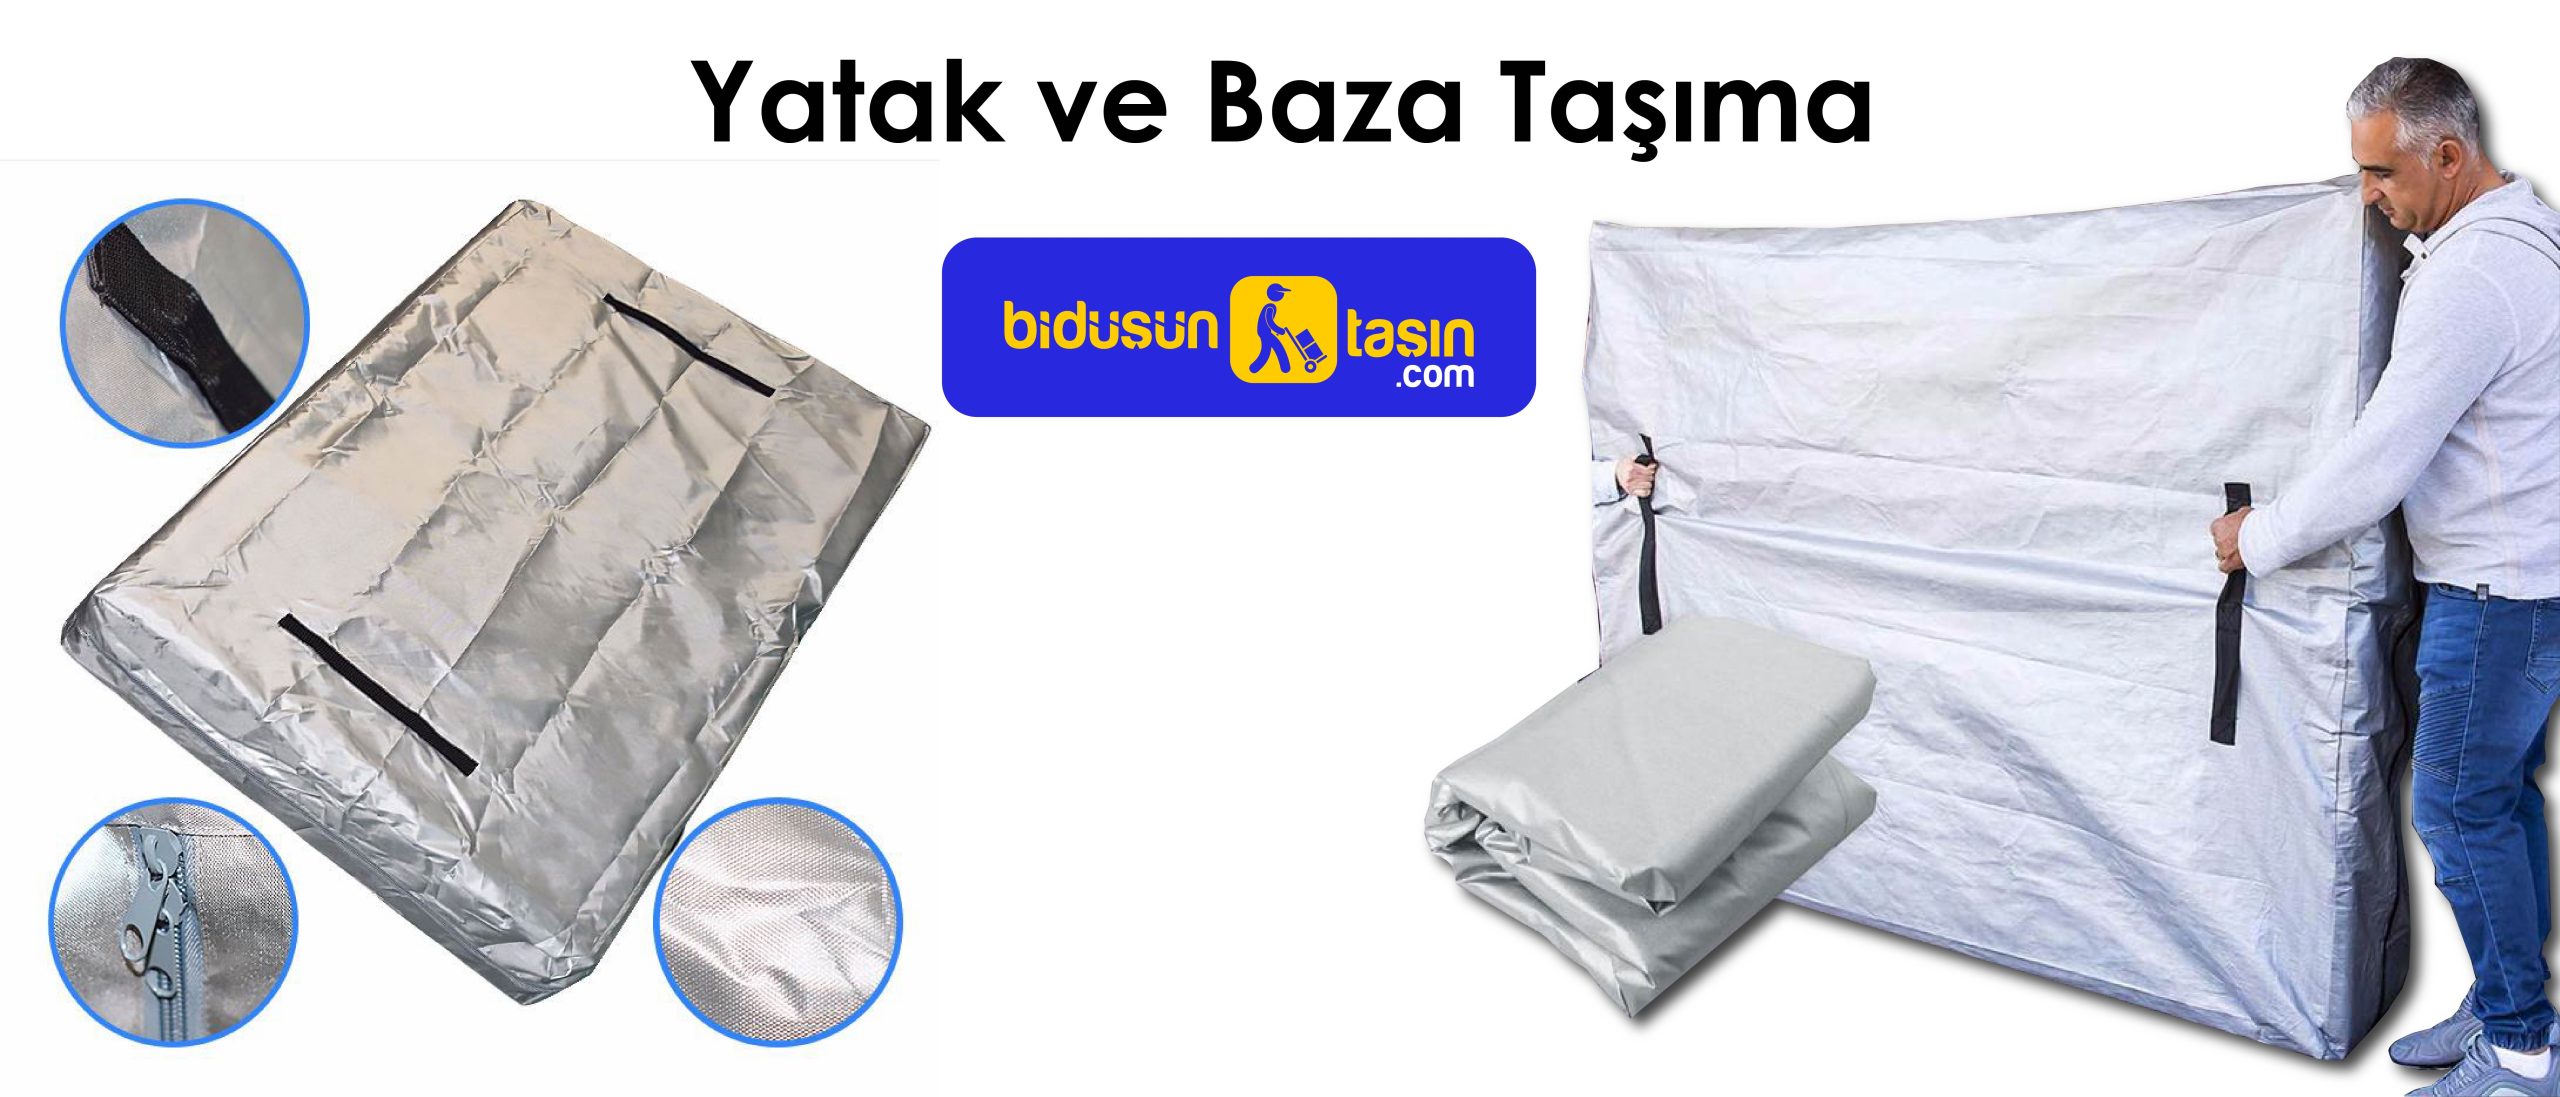 Yatak baza taşımacılığında Türkiye'nin yerli markasından hemen hizmet al.